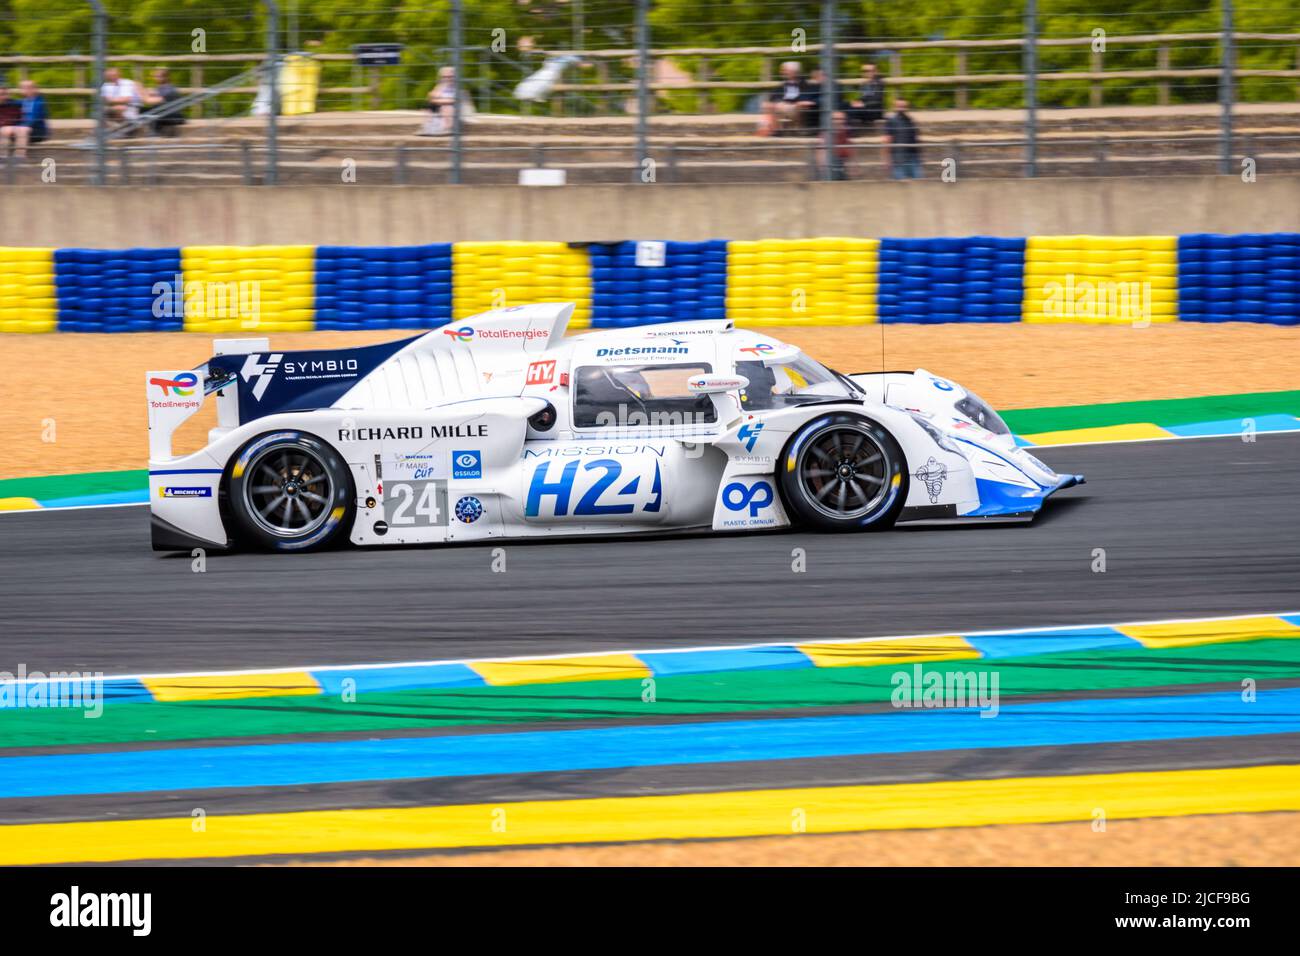 Vista lateral del prototipo de coche de carreras de hidrógeno eléctrico de MissionH24 que conduce en las 24 horas de Le Mans pista de carreras durante una sesión de práctica. Foto de stock